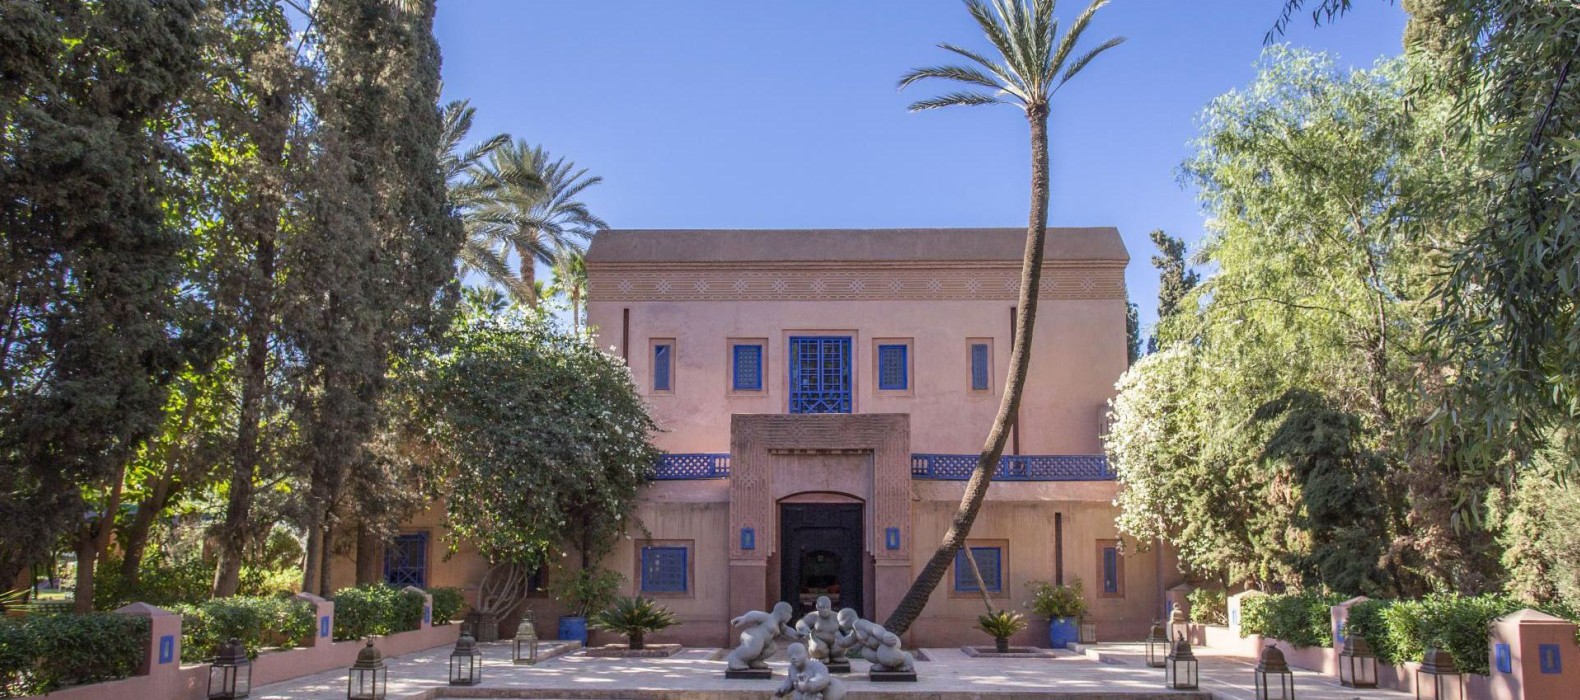 Exterior villa view of Villa Petite Majorelle in Marrakech